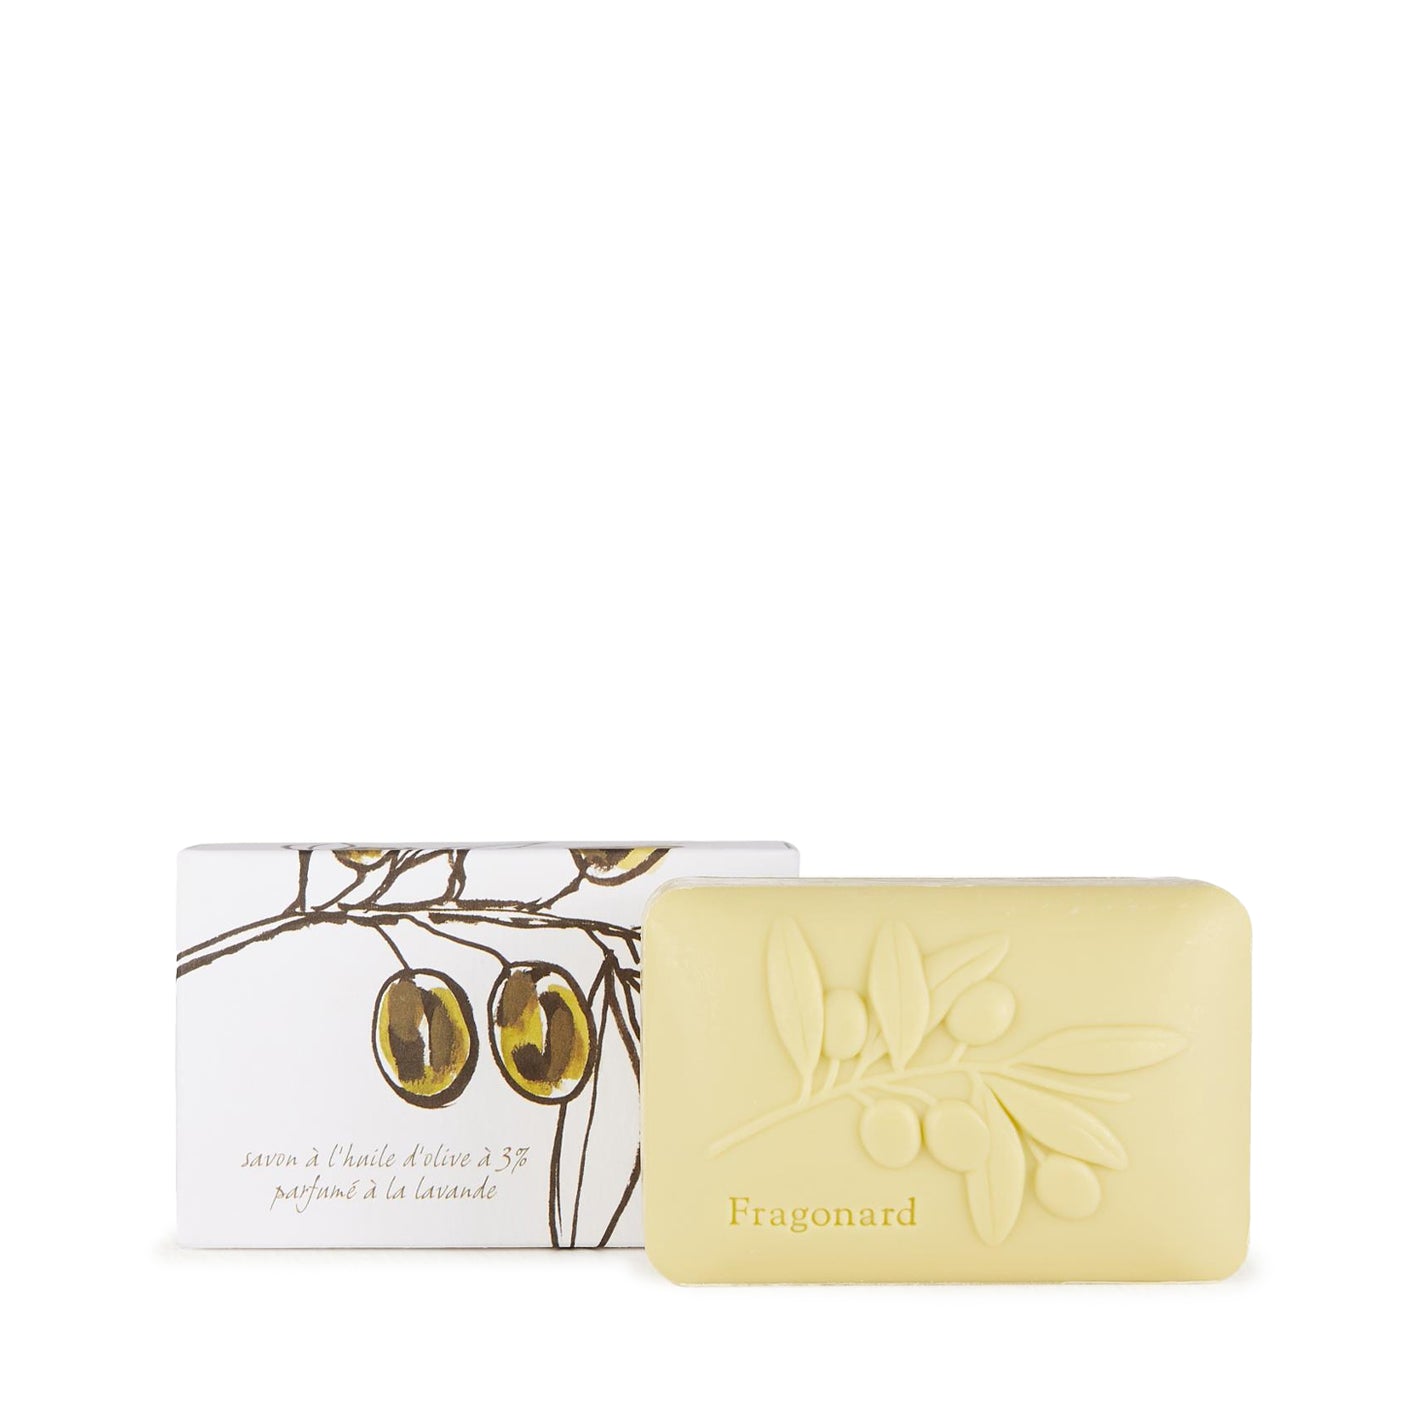 Fragonard Olive Oil Botanical Soap